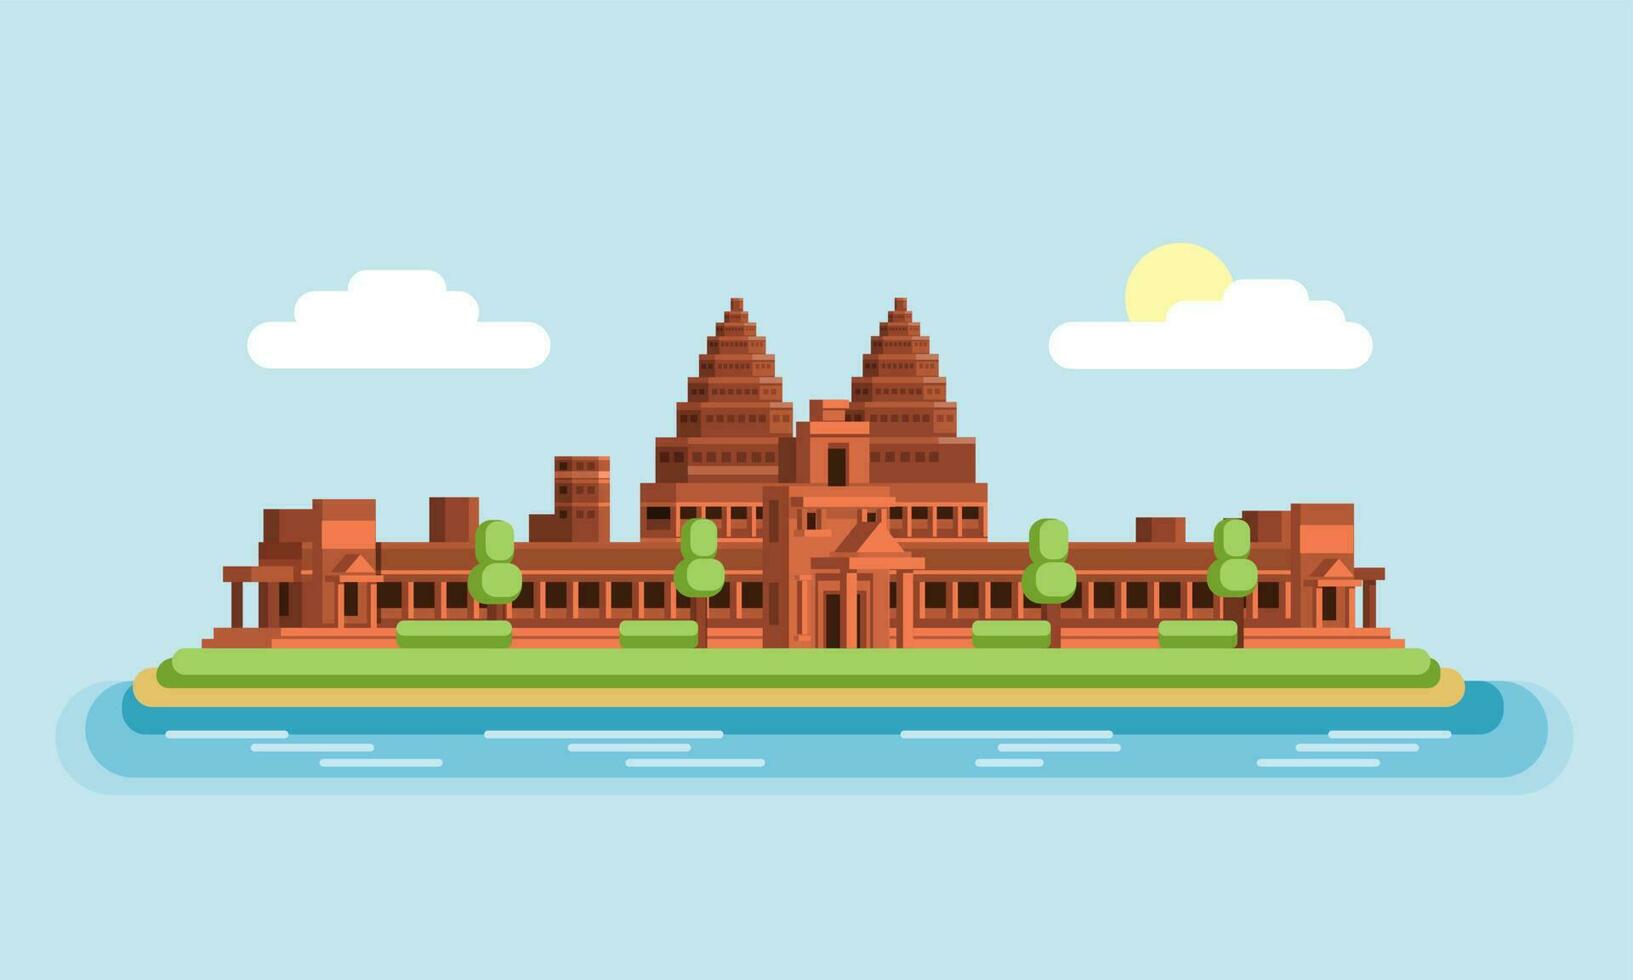 Angkor wat tempel beroemd gebouw mijlpaal van Cambodja Azië. vlak ontwerp illustratie vector